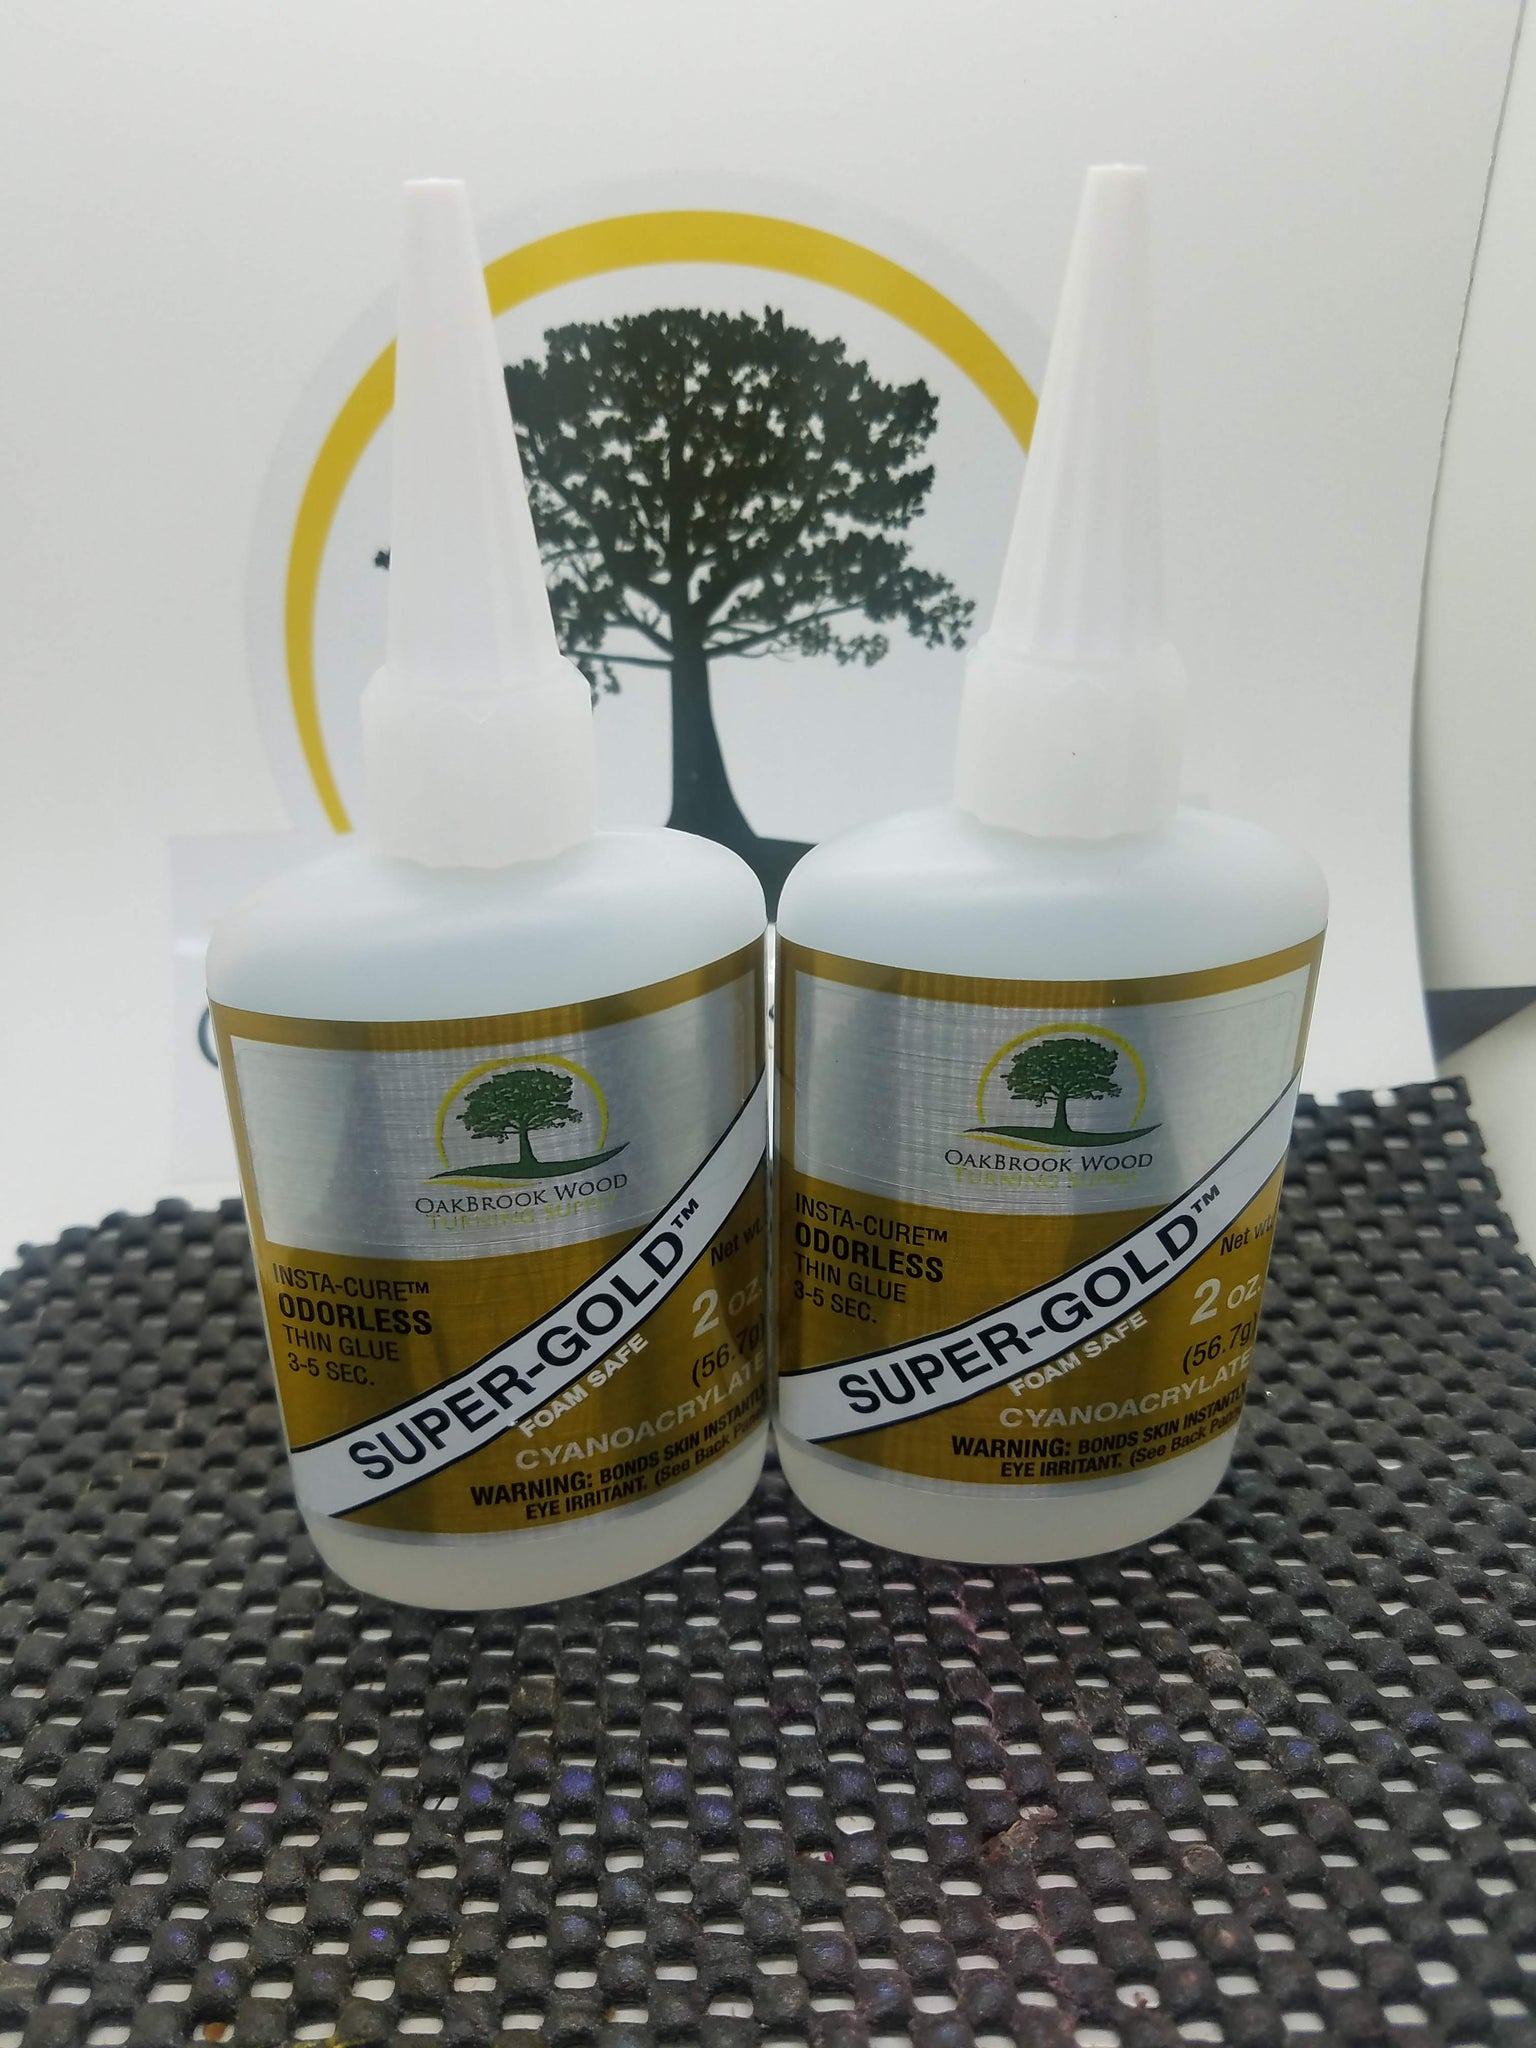 Super-Gold Thin Odorless Foam Safe CA - 1/2 oz